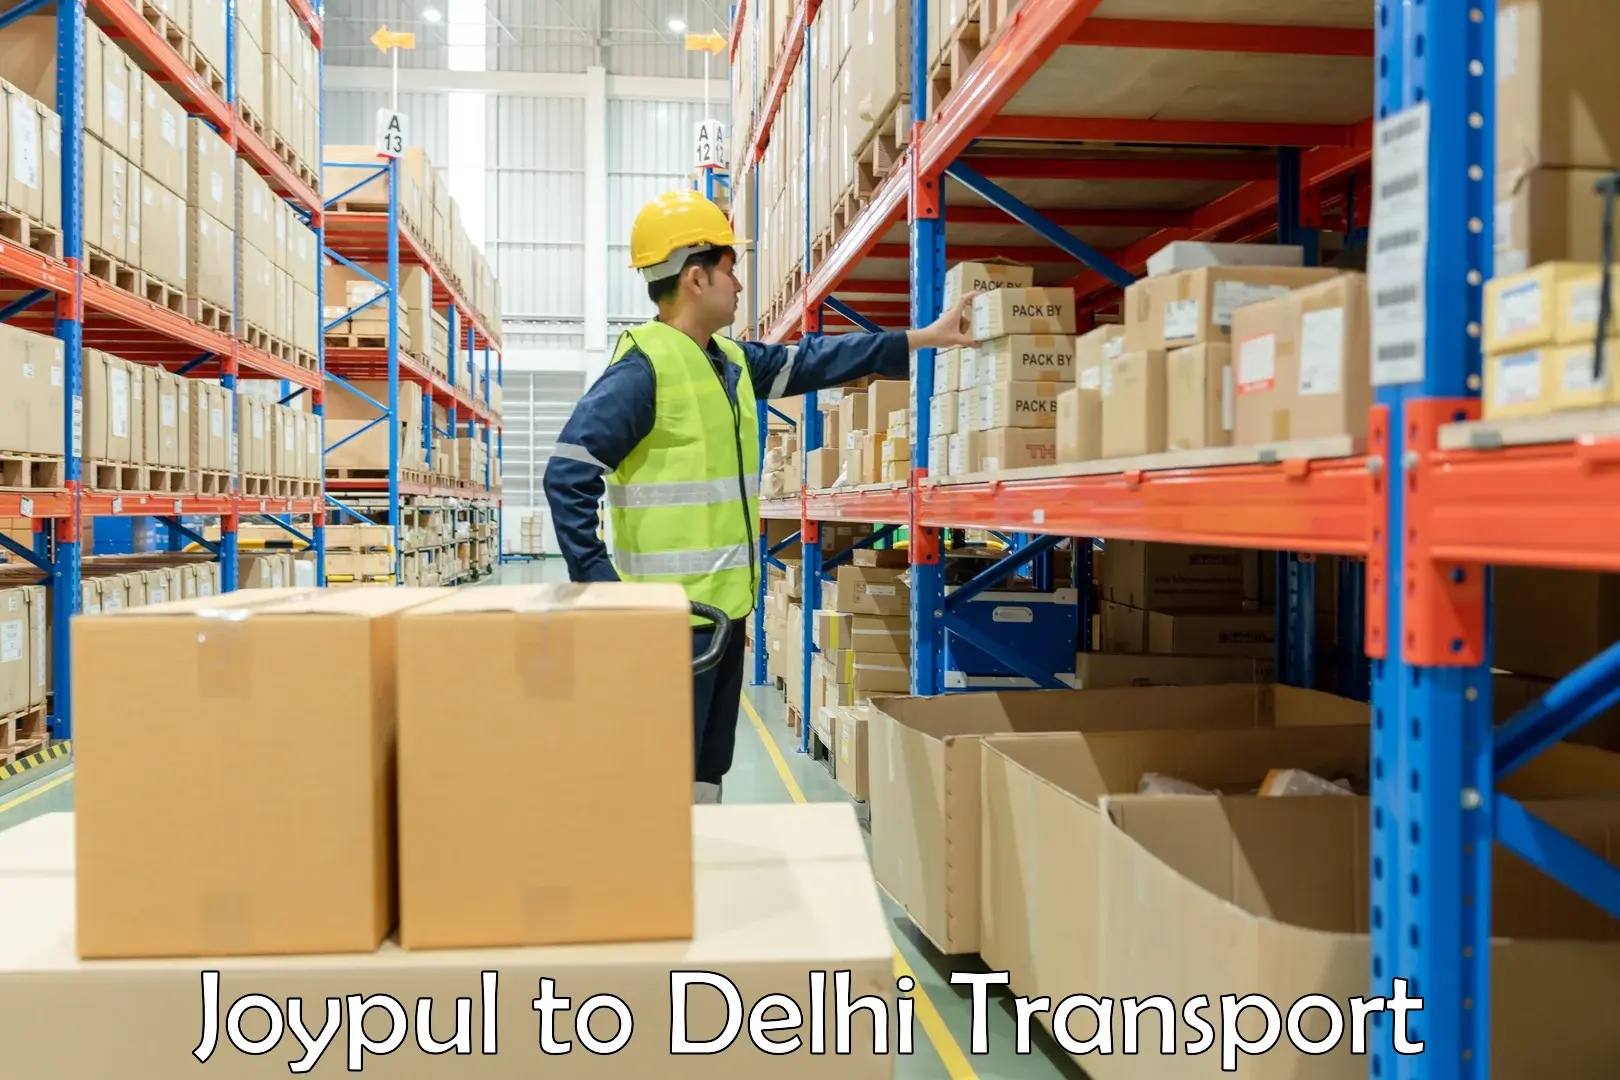 Delivery service Joypul to Delhi